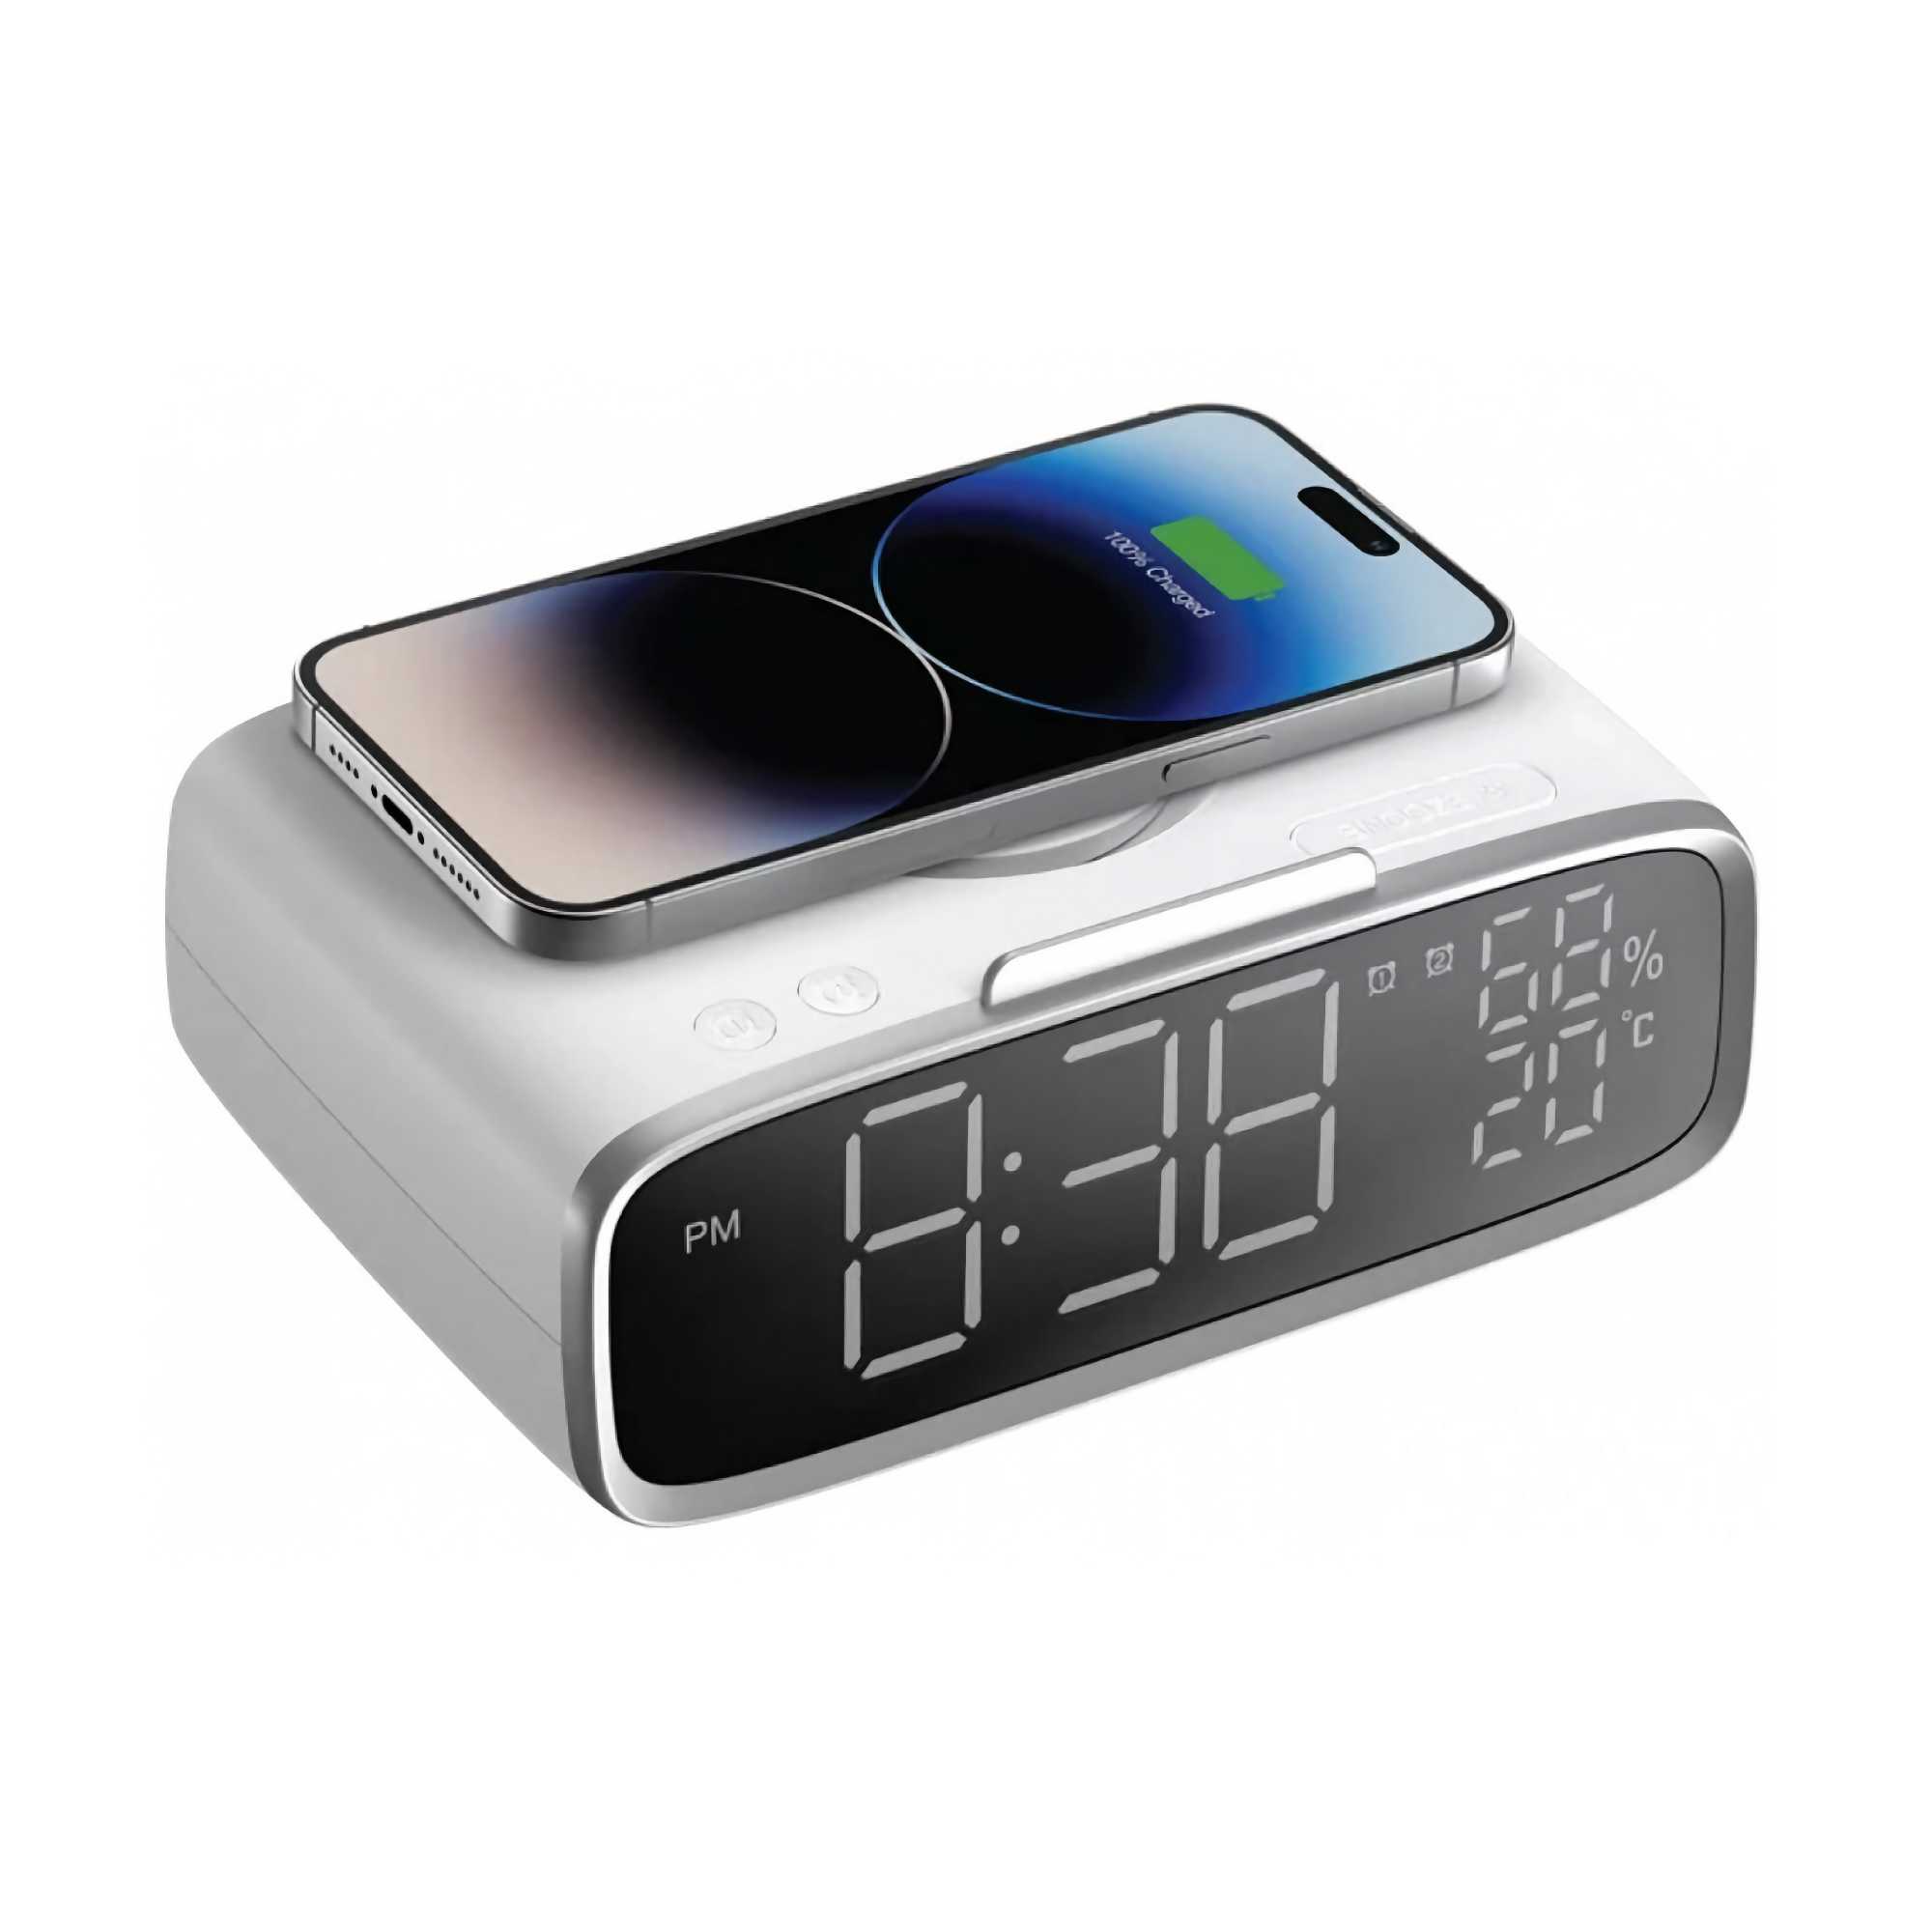 Momax Q.Clock5 Digital Clock with Wireless Charging QC5